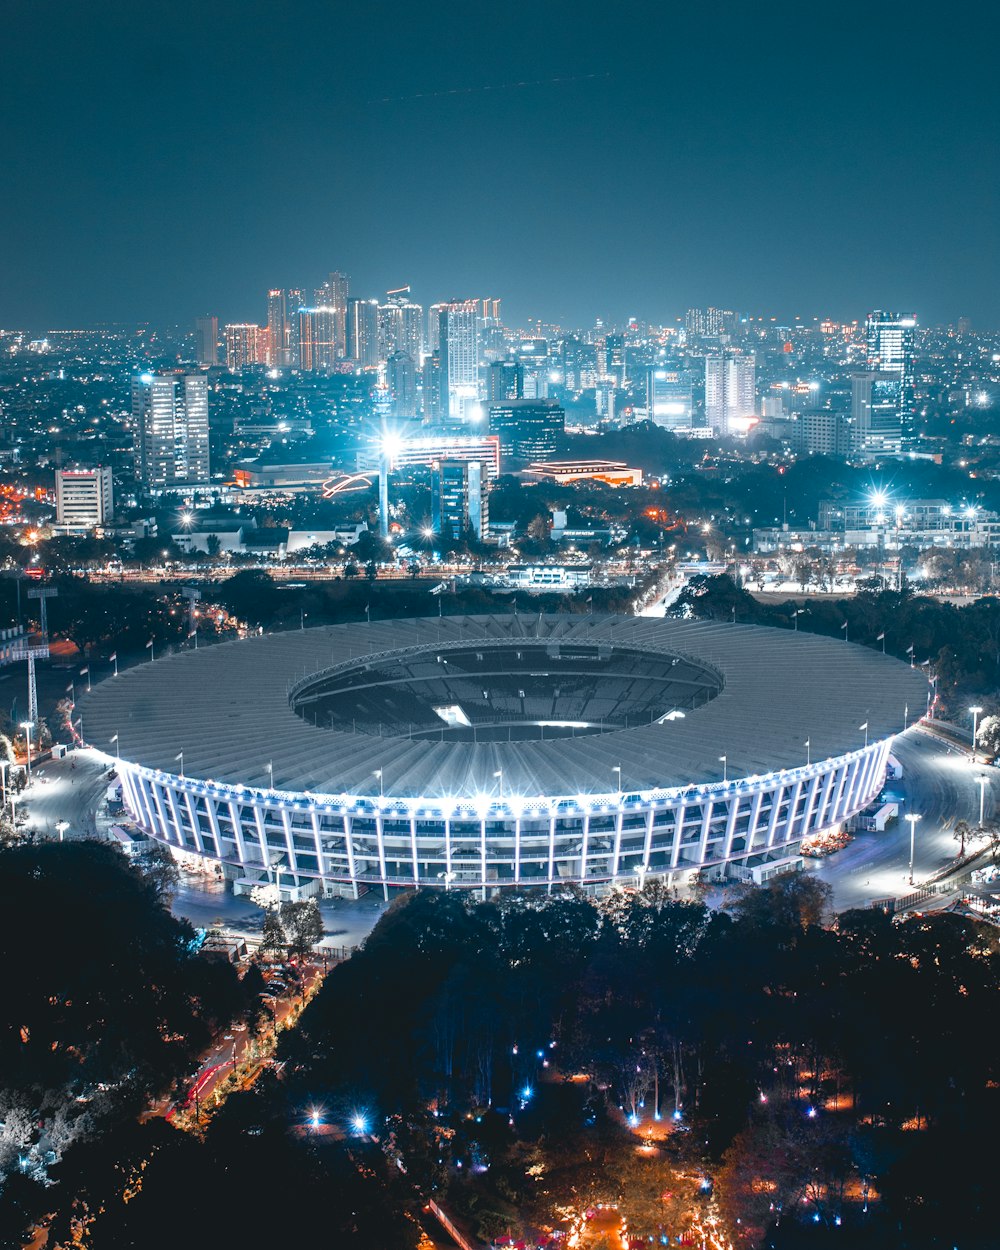 Fußball-spezifisches Stadion bei Nacht